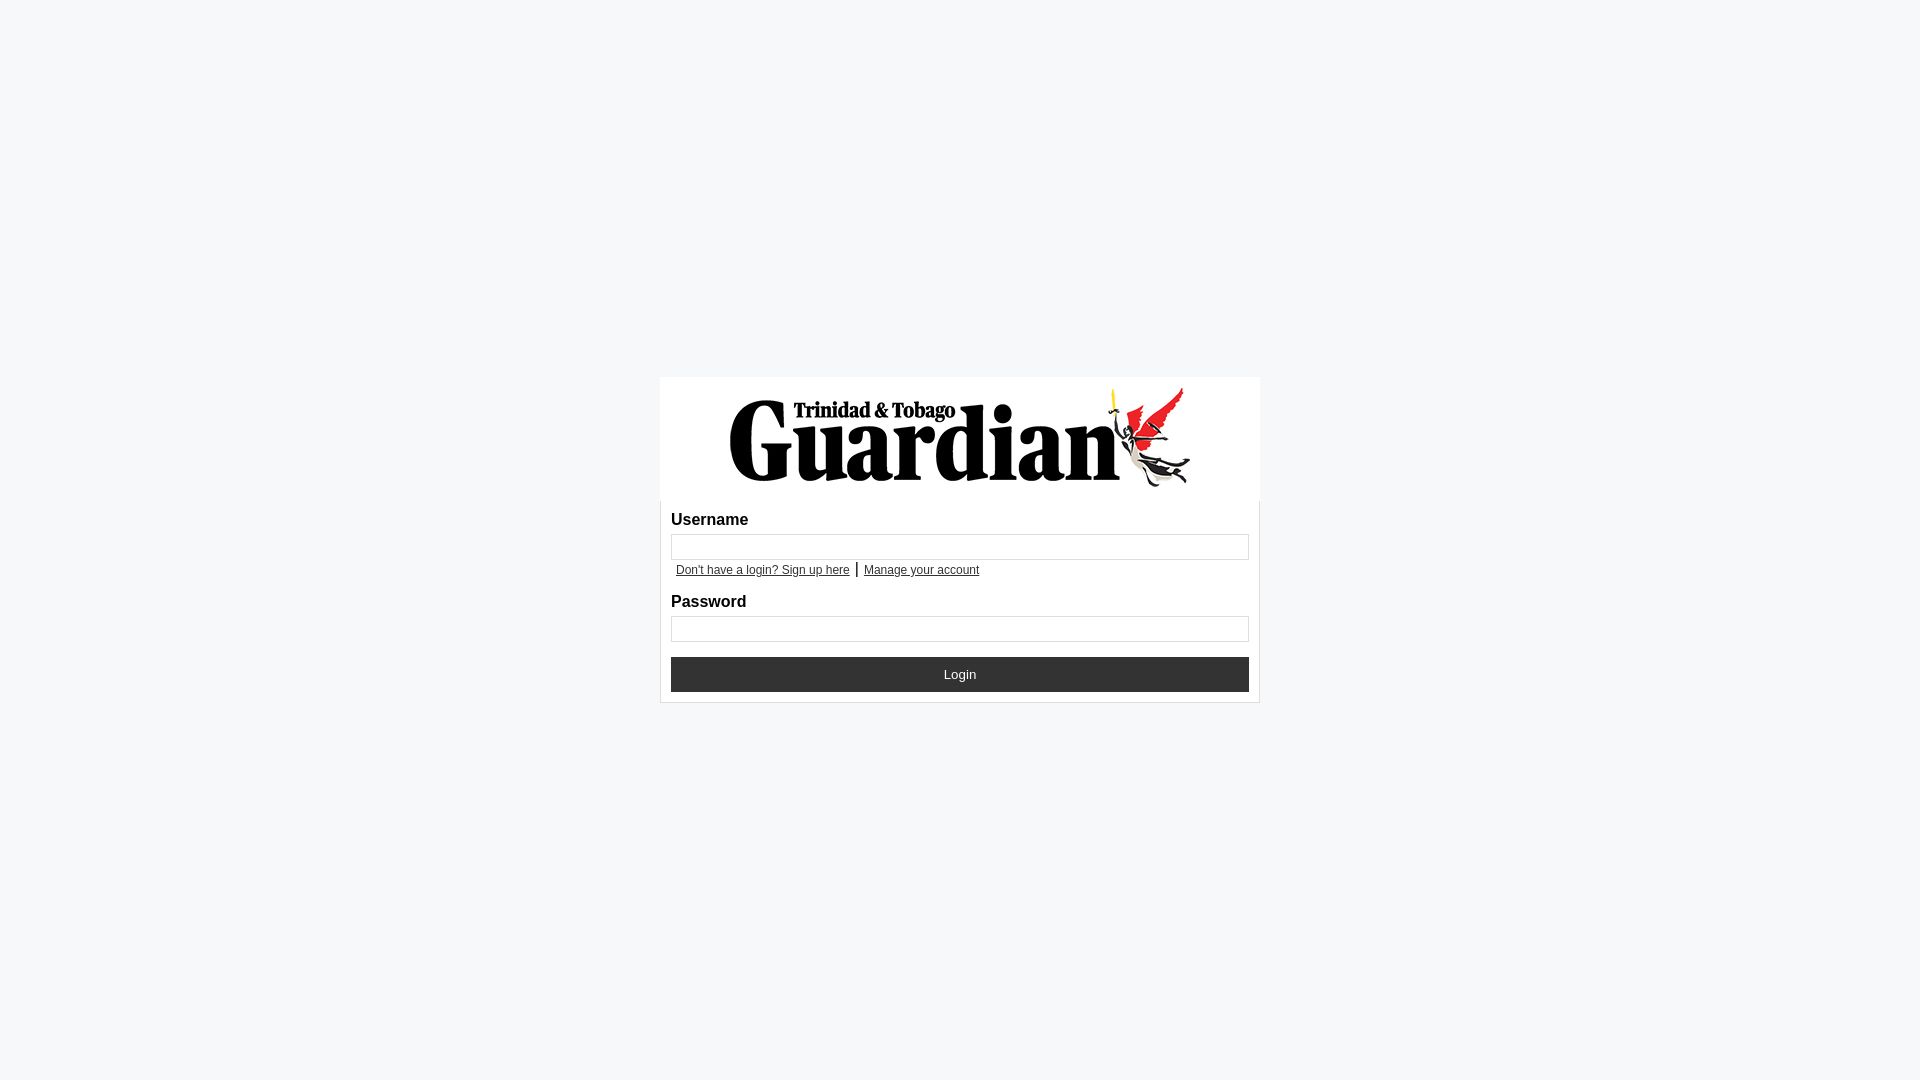 Stato del sito web digital.guardian.co.tt è   ONLINE